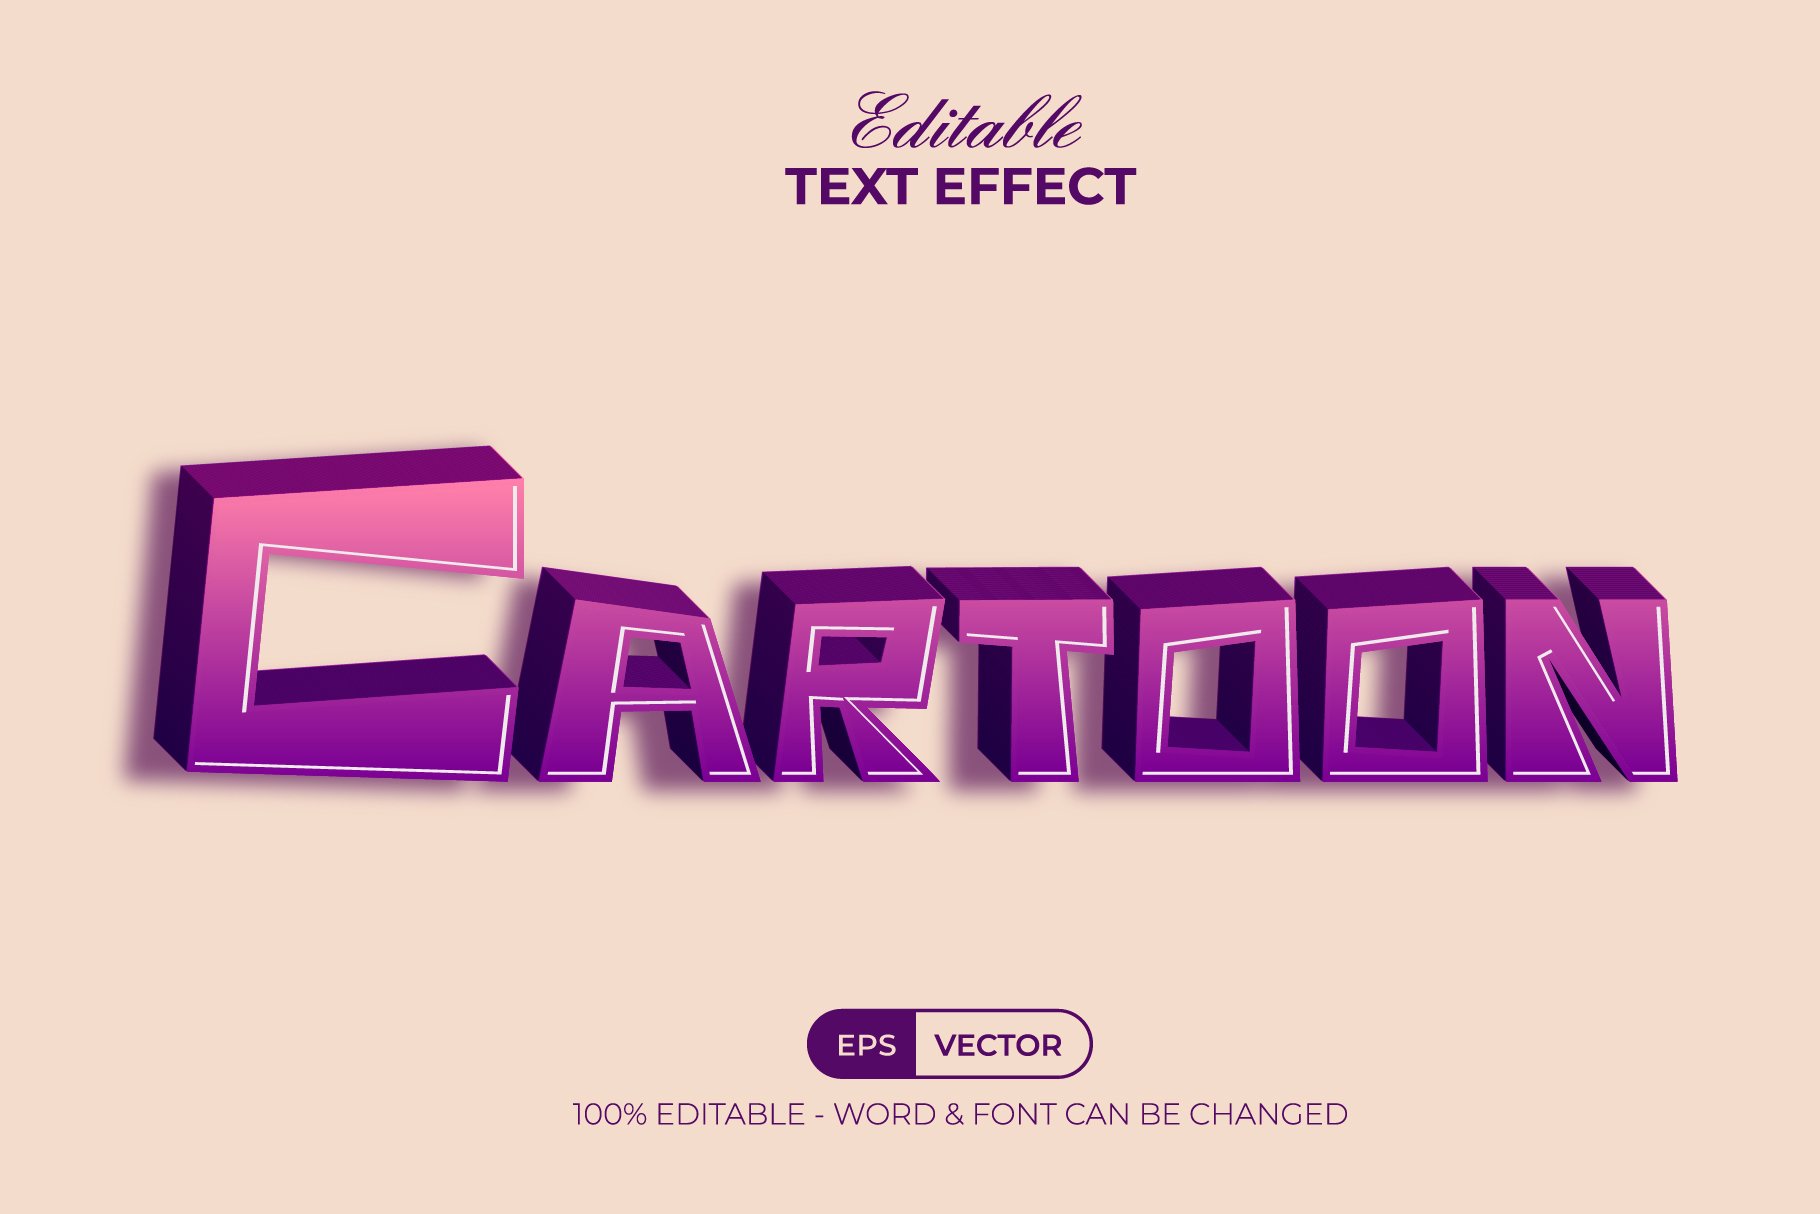 3D text effect cartoon stylecover image.